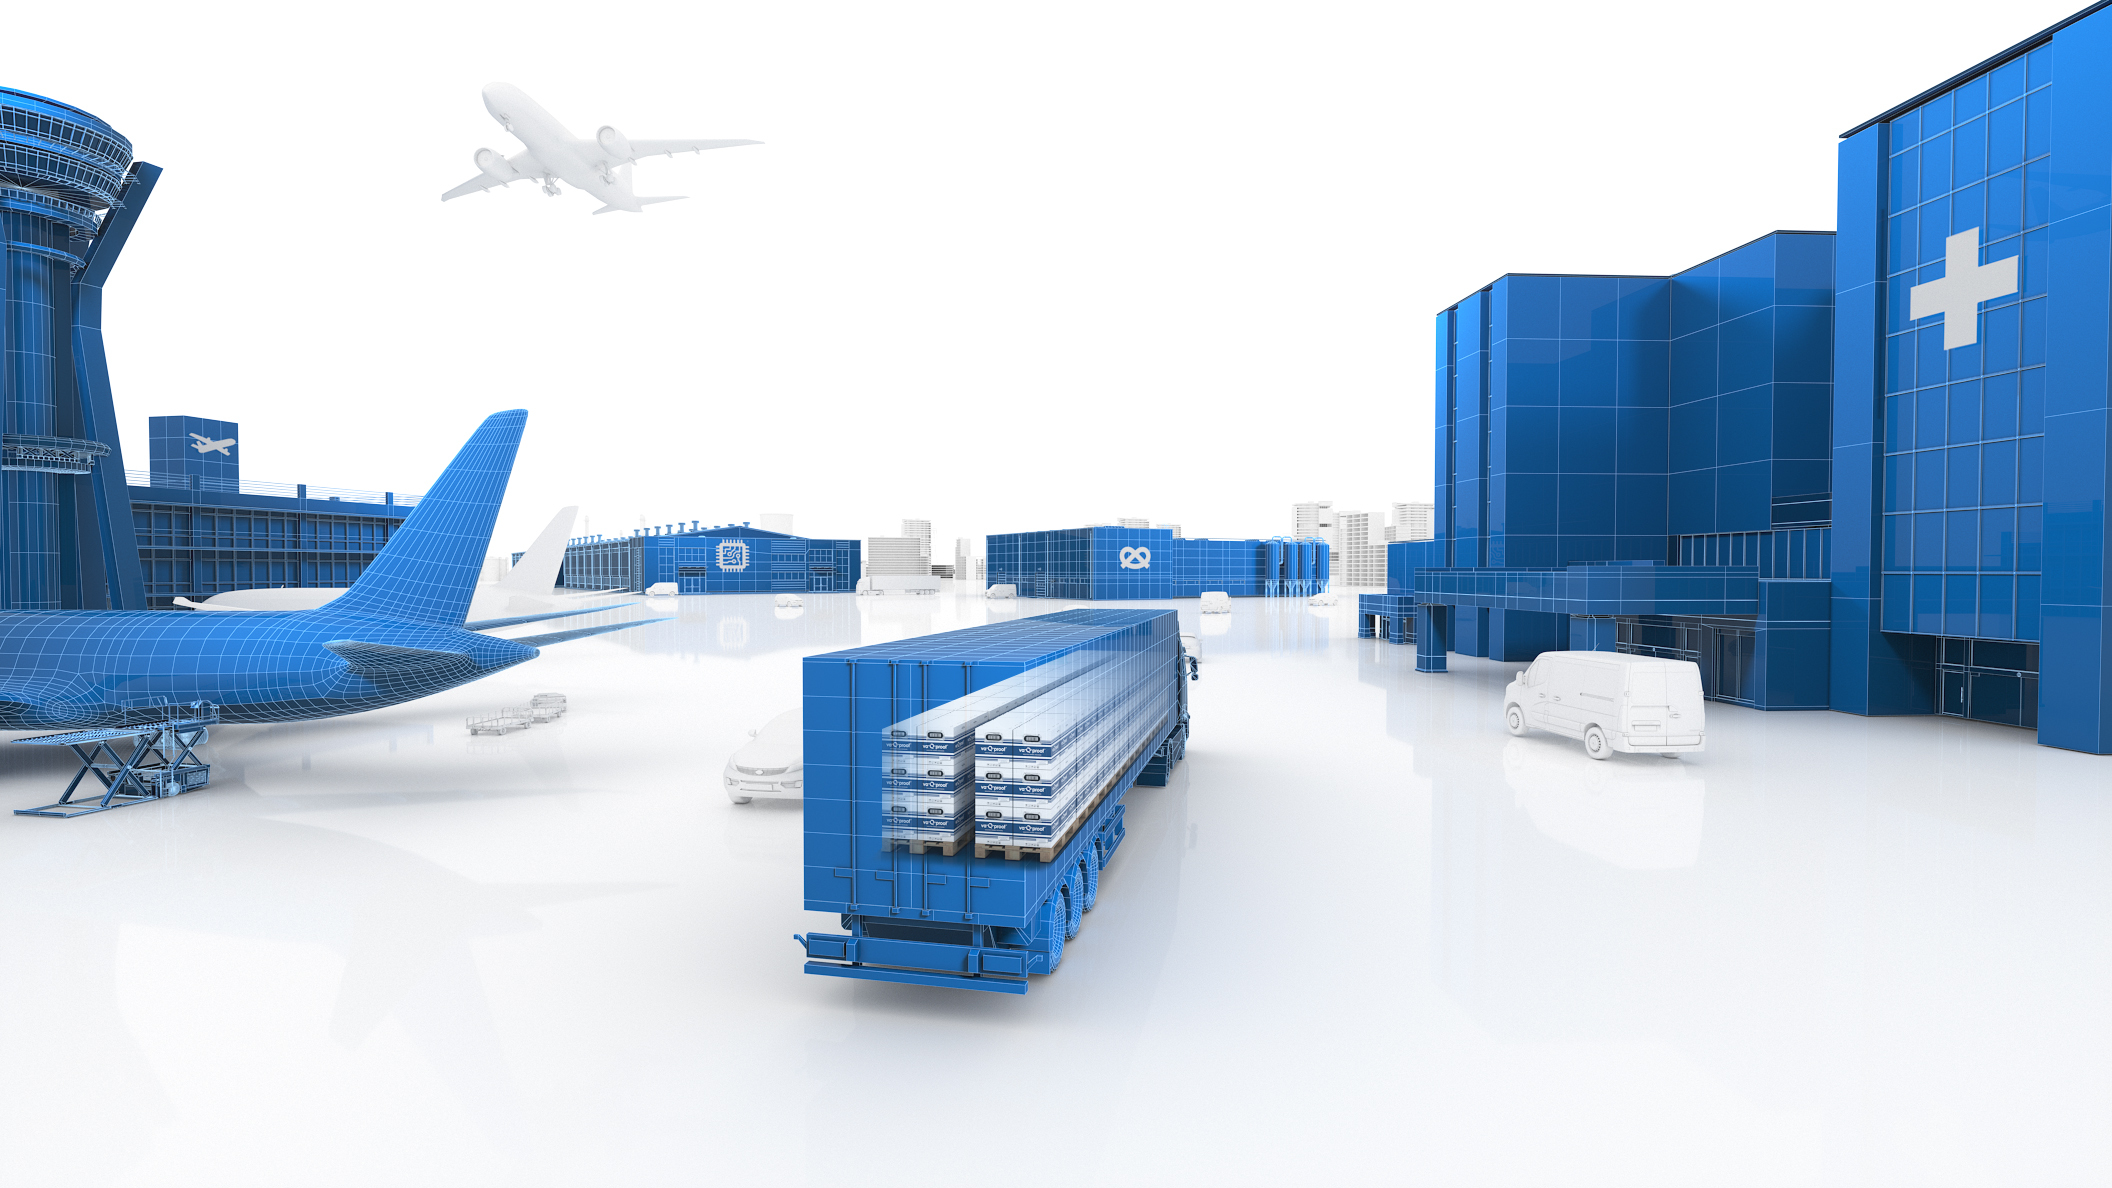 Ein schematisches, computererzeugtes Bild eines Flughafens mit Drahtgittermodellen von Flugzeugen, Fahrzeugen und Gebäuden.